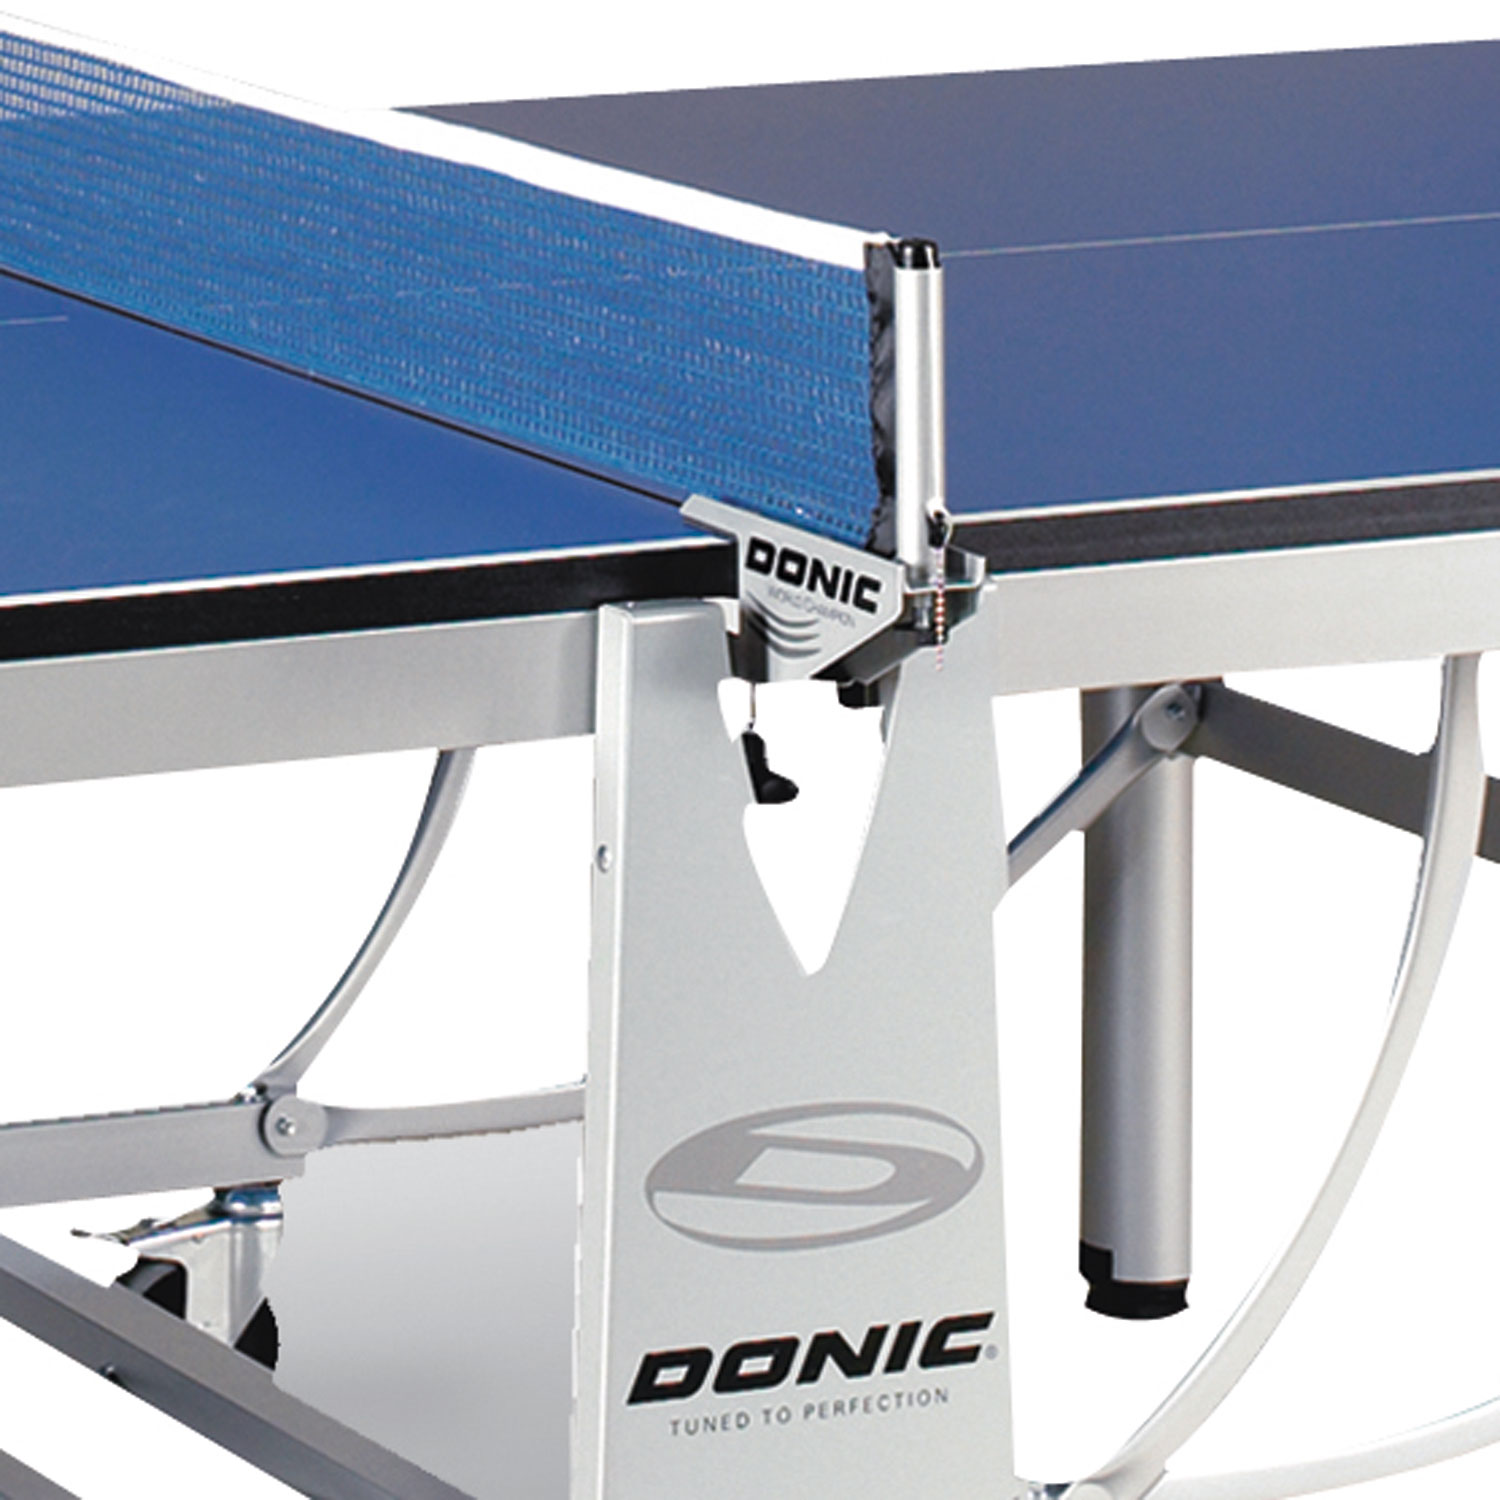 Профессиональный теннисный стол Donic World Champion TC синий DR-19